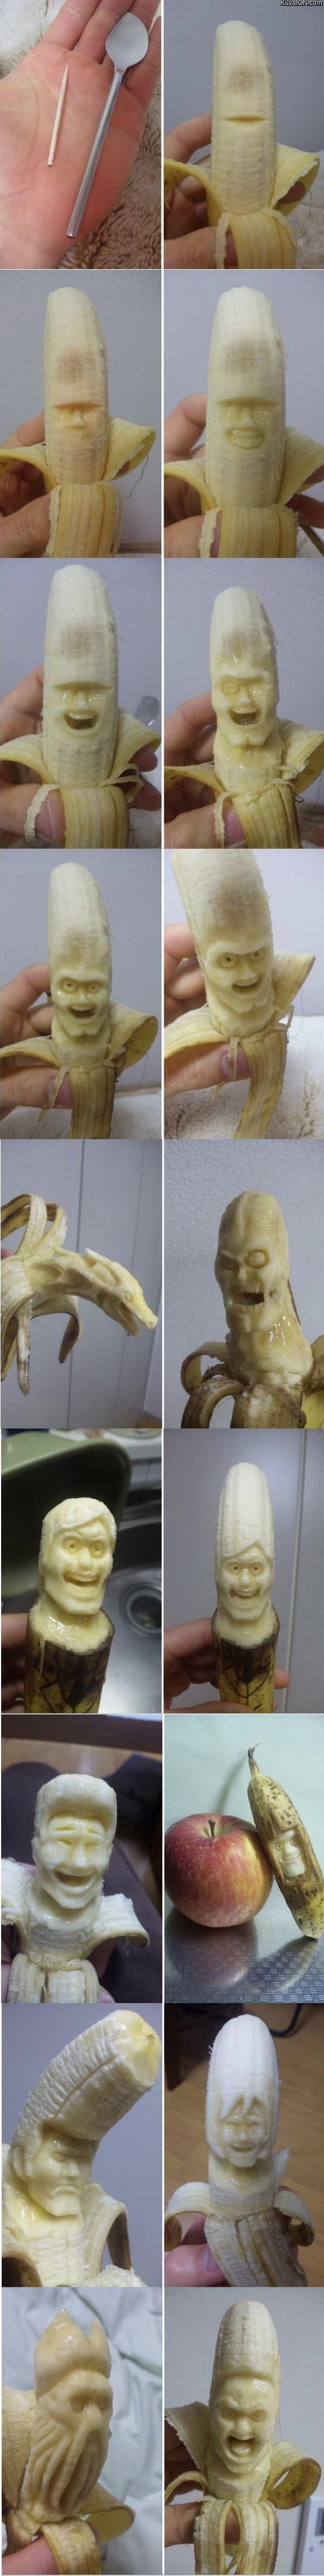 banana_sculptures.jpg